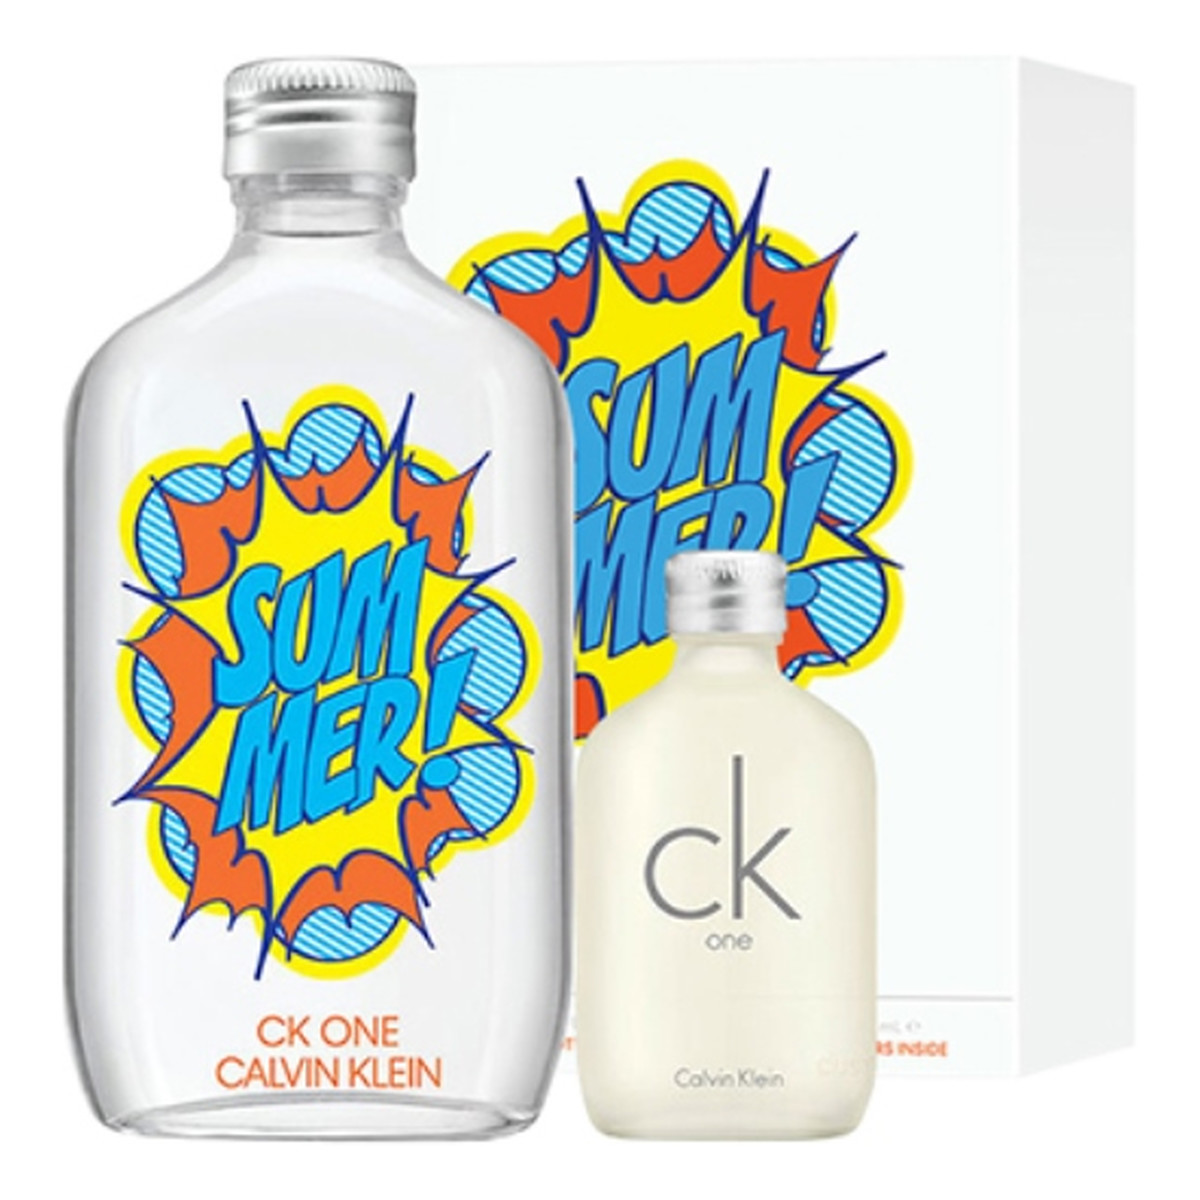 Calvin Klein CK One Summer 2019 Zestaw woda toaletowa spray 100ml + ck one woda toaletowa spray 15ml